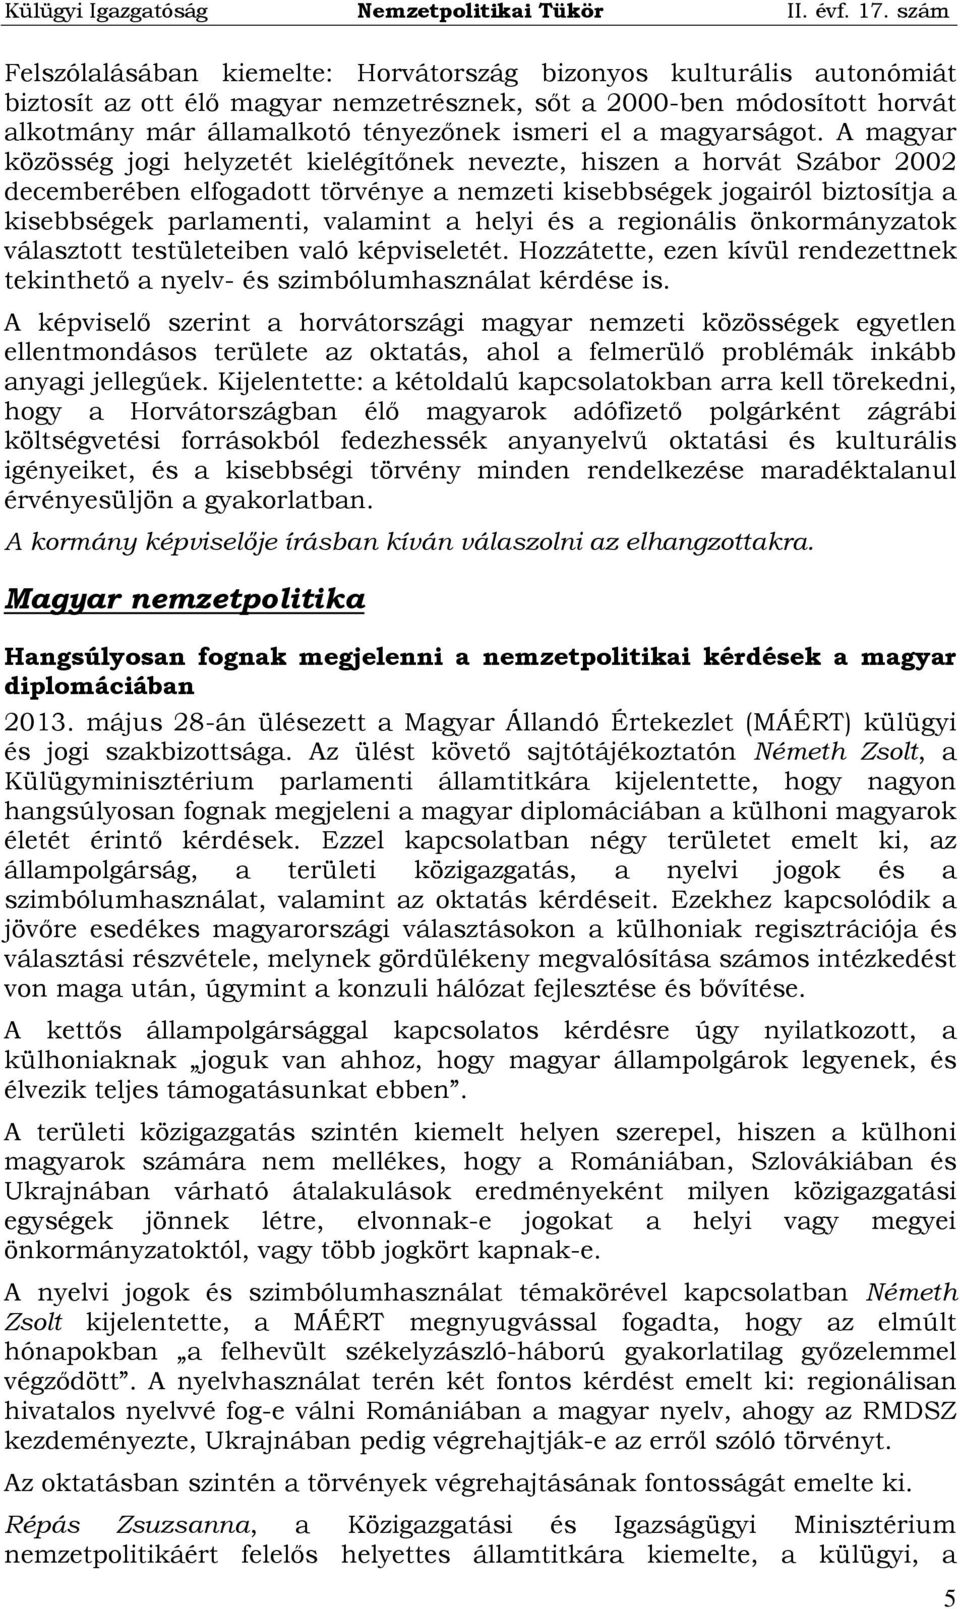 A magyar közösség jogi helyzetét kielégítőnek nevezte, hiszen a horvát Szábor 2002 decemberében elfogadott törvénye a nemzeti kisebbségek jogairól biztosítja a kisebbségek parlamenti, valamint a